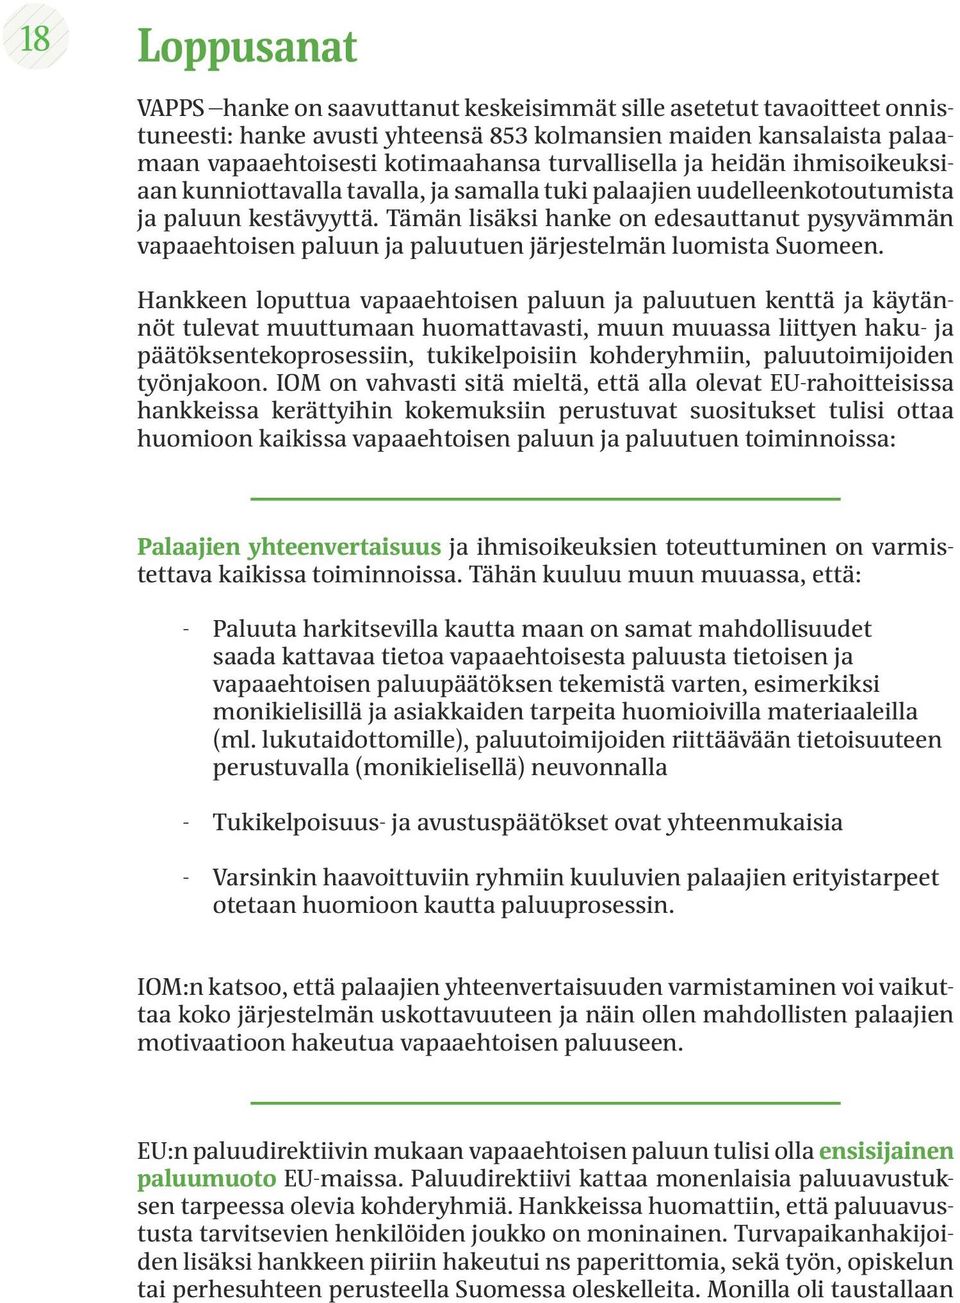 Tämän lisäksi hanke on edesauttanut pysyvämmän vapaaehtoisen paluun ja paluutuen järjestelmän luomista Suomeen.